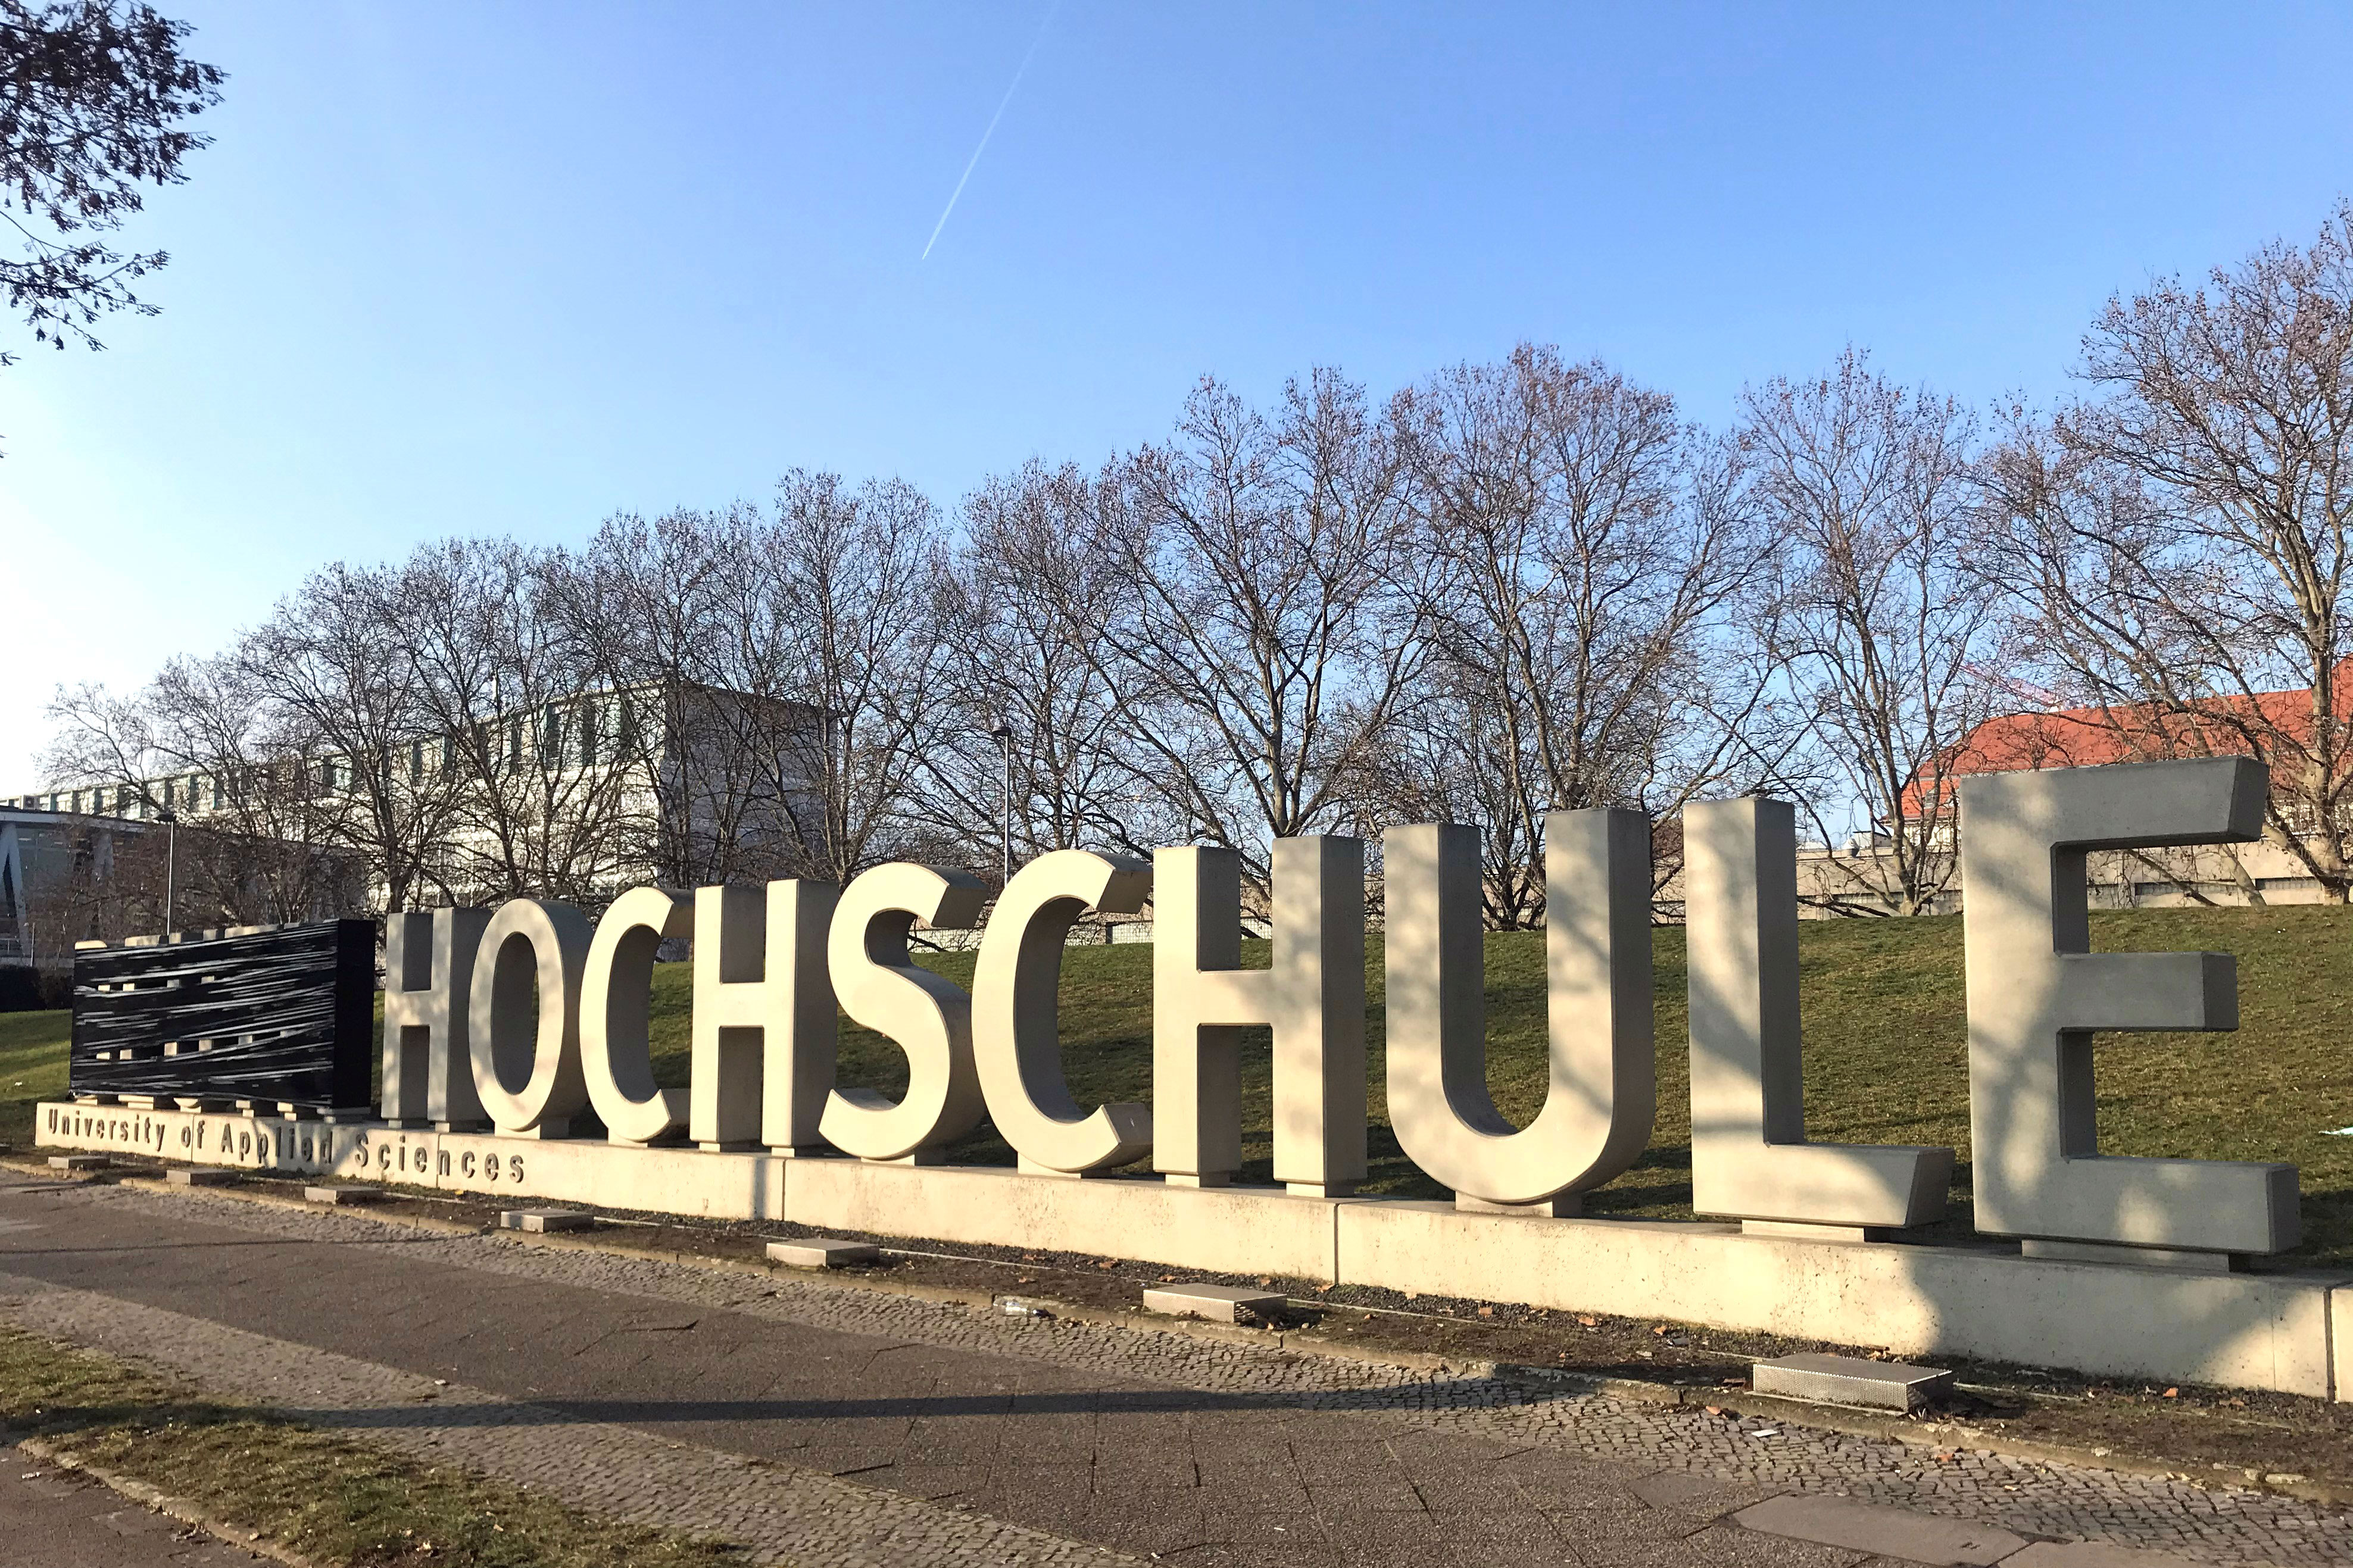 Betonbuchstaben auf dem Campus der Hochschule, Name "Beuth" verhüllt